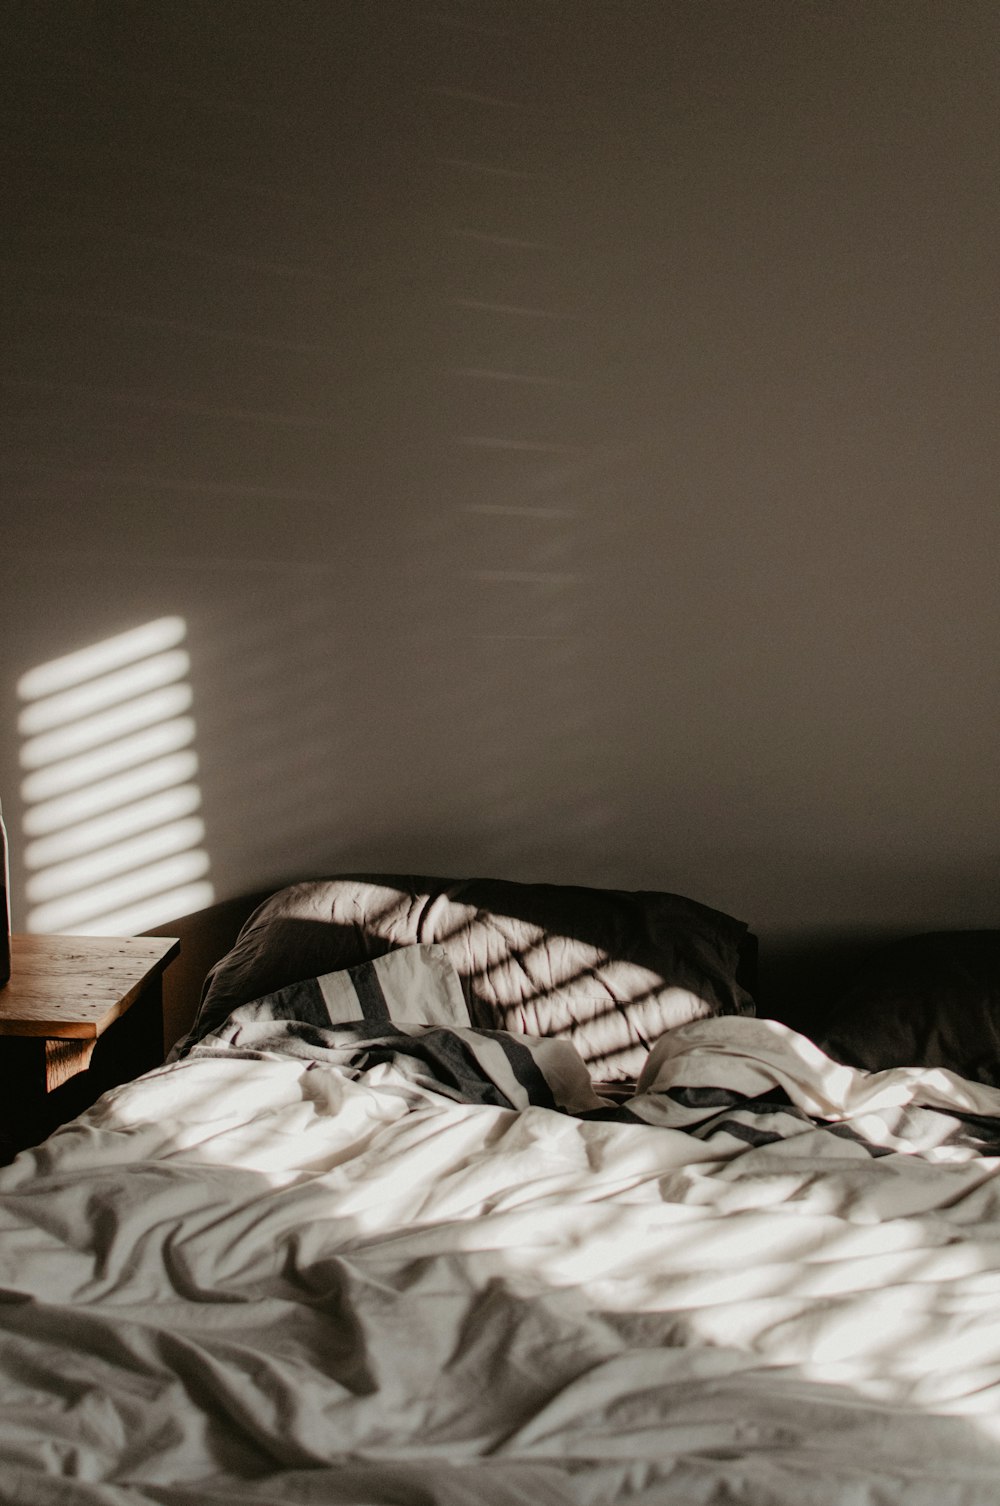 luce solare all'interno del letto